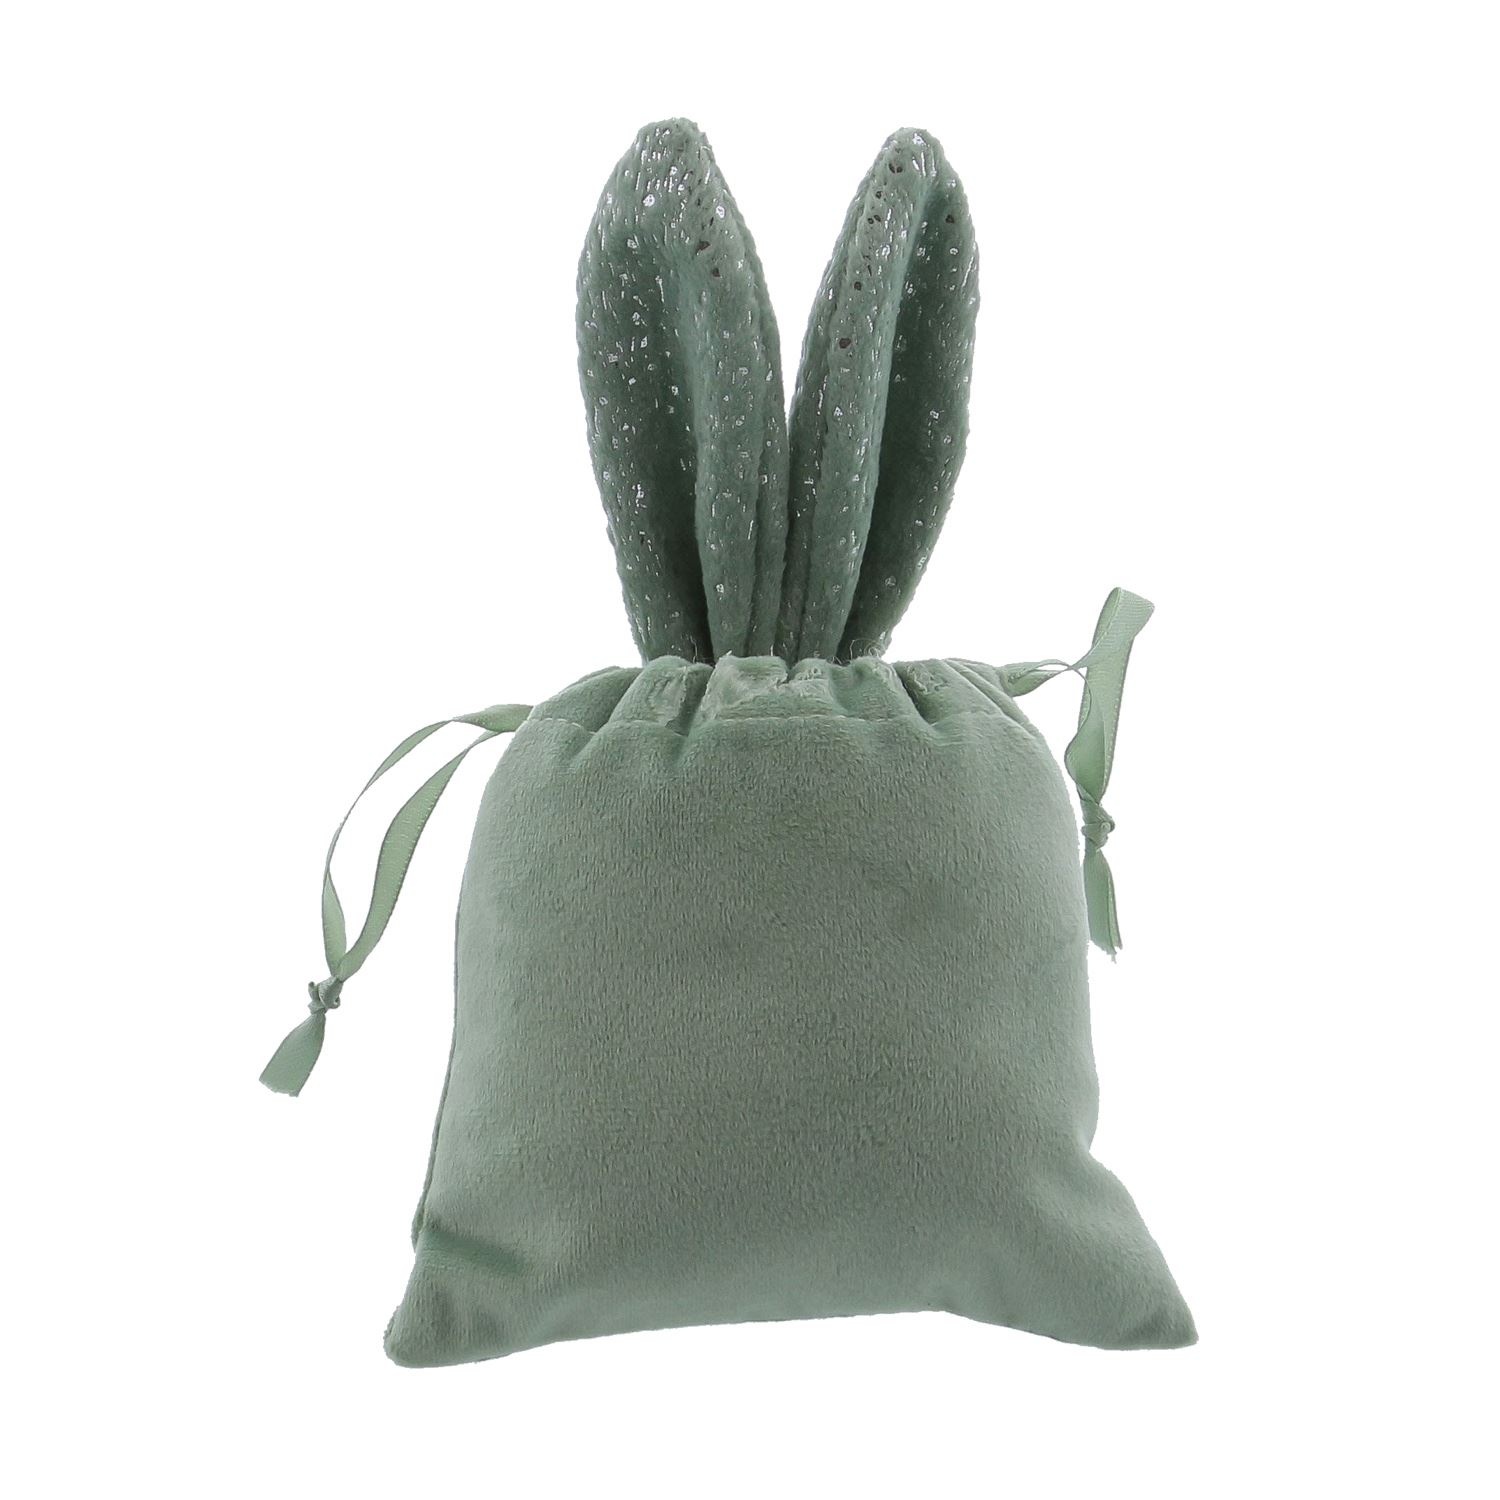 Kaninchen-Ziehbeutel „Glimpy“ mit Ohren – rauchgrün – 125*10*220 mm – 12 Stück